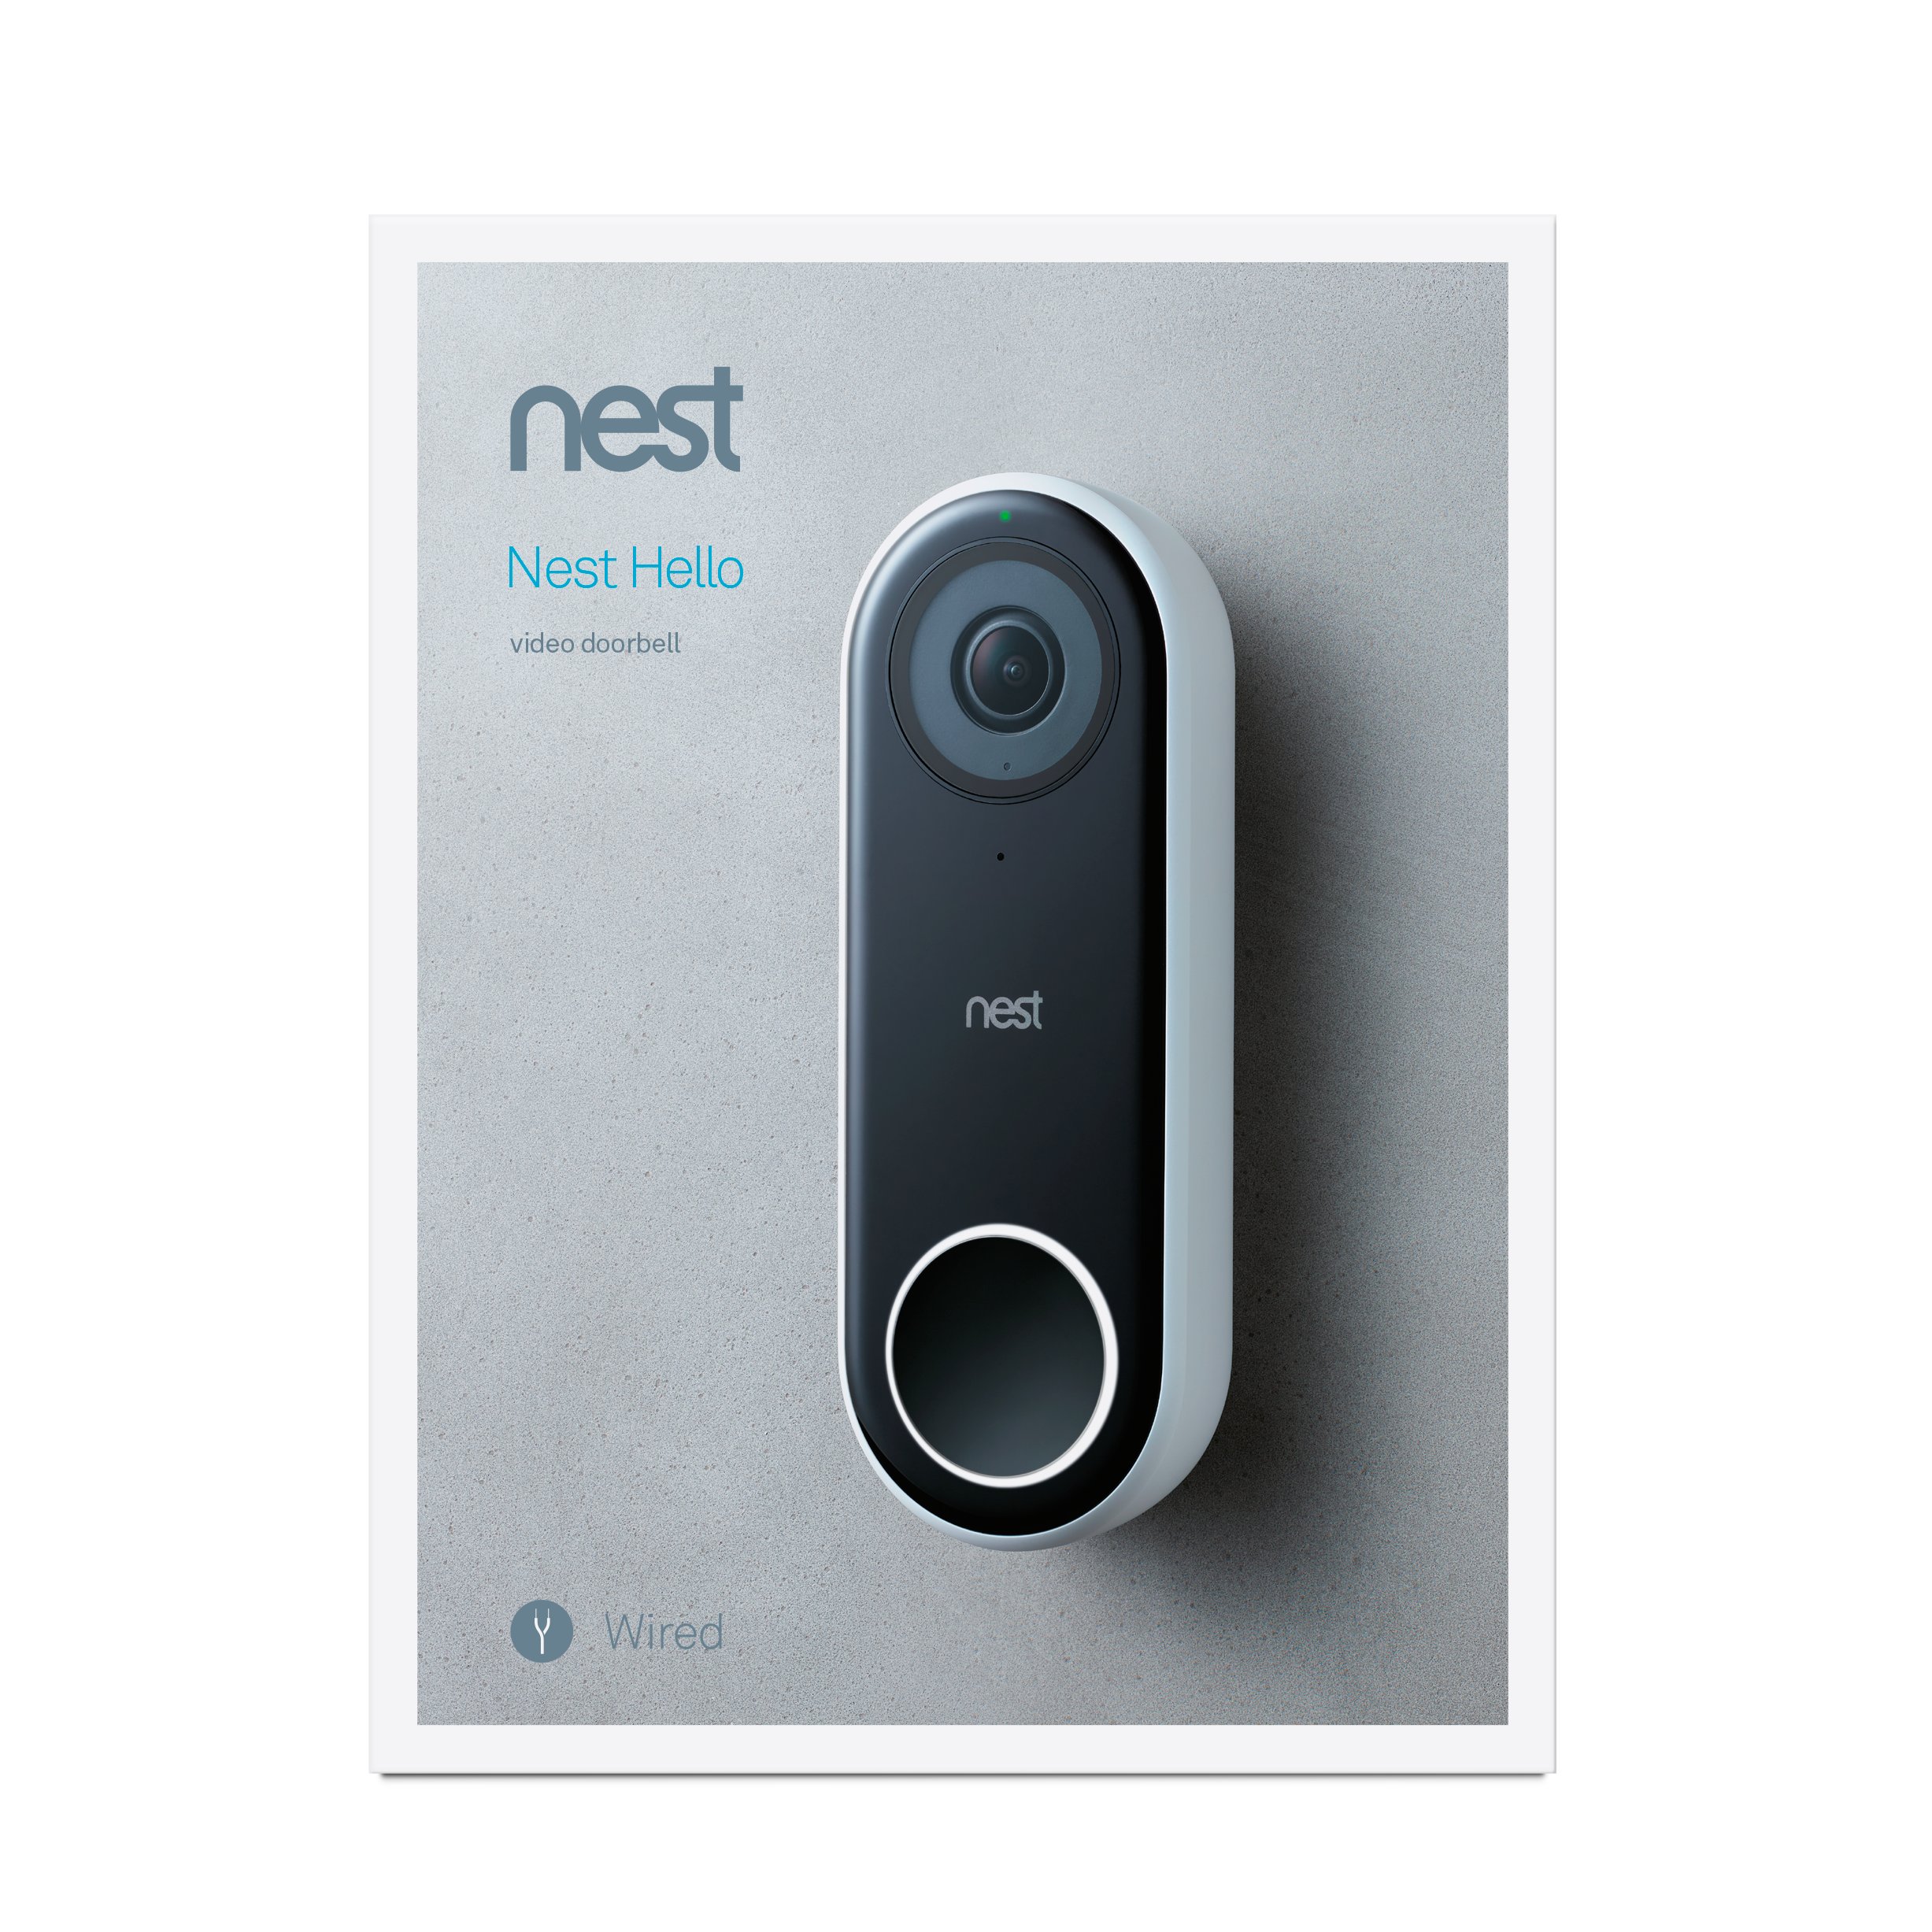 nest doorbell service